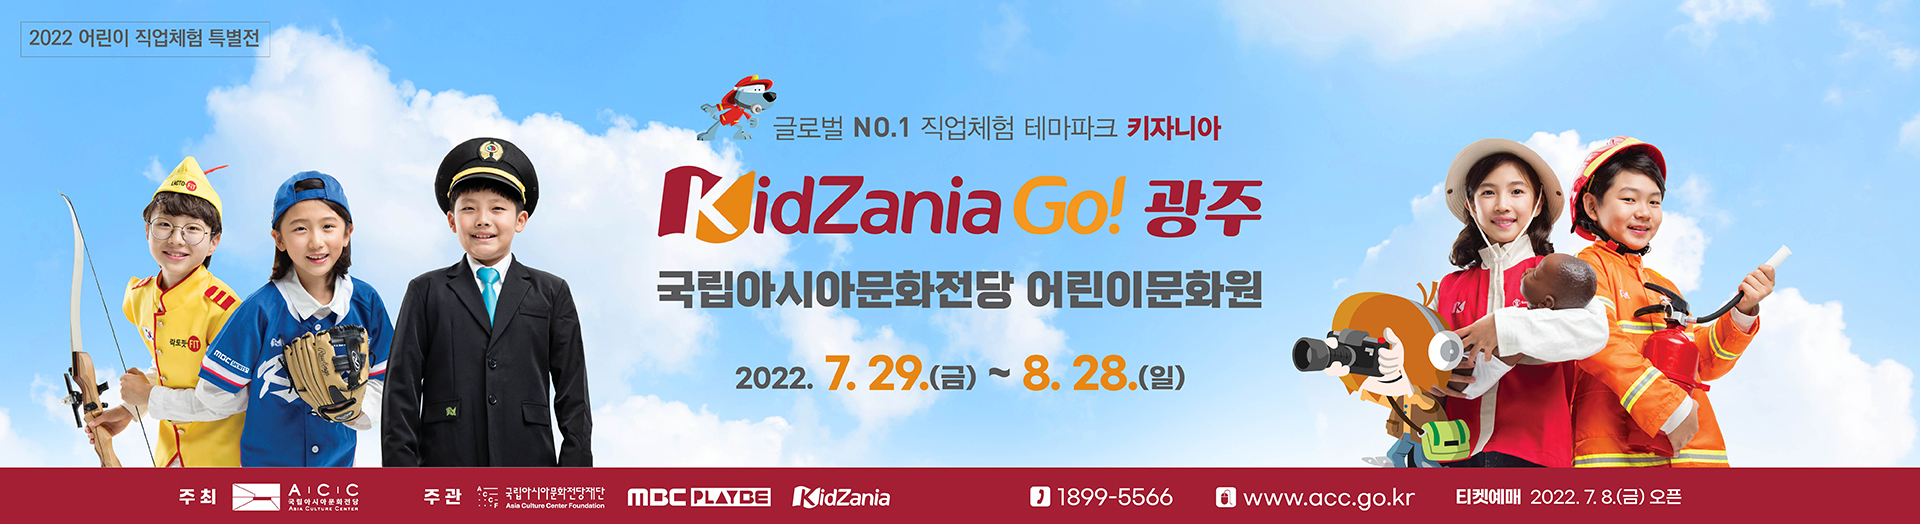 2022 Children’s Special Vocational Experience “KidZania Go! Gwangju”